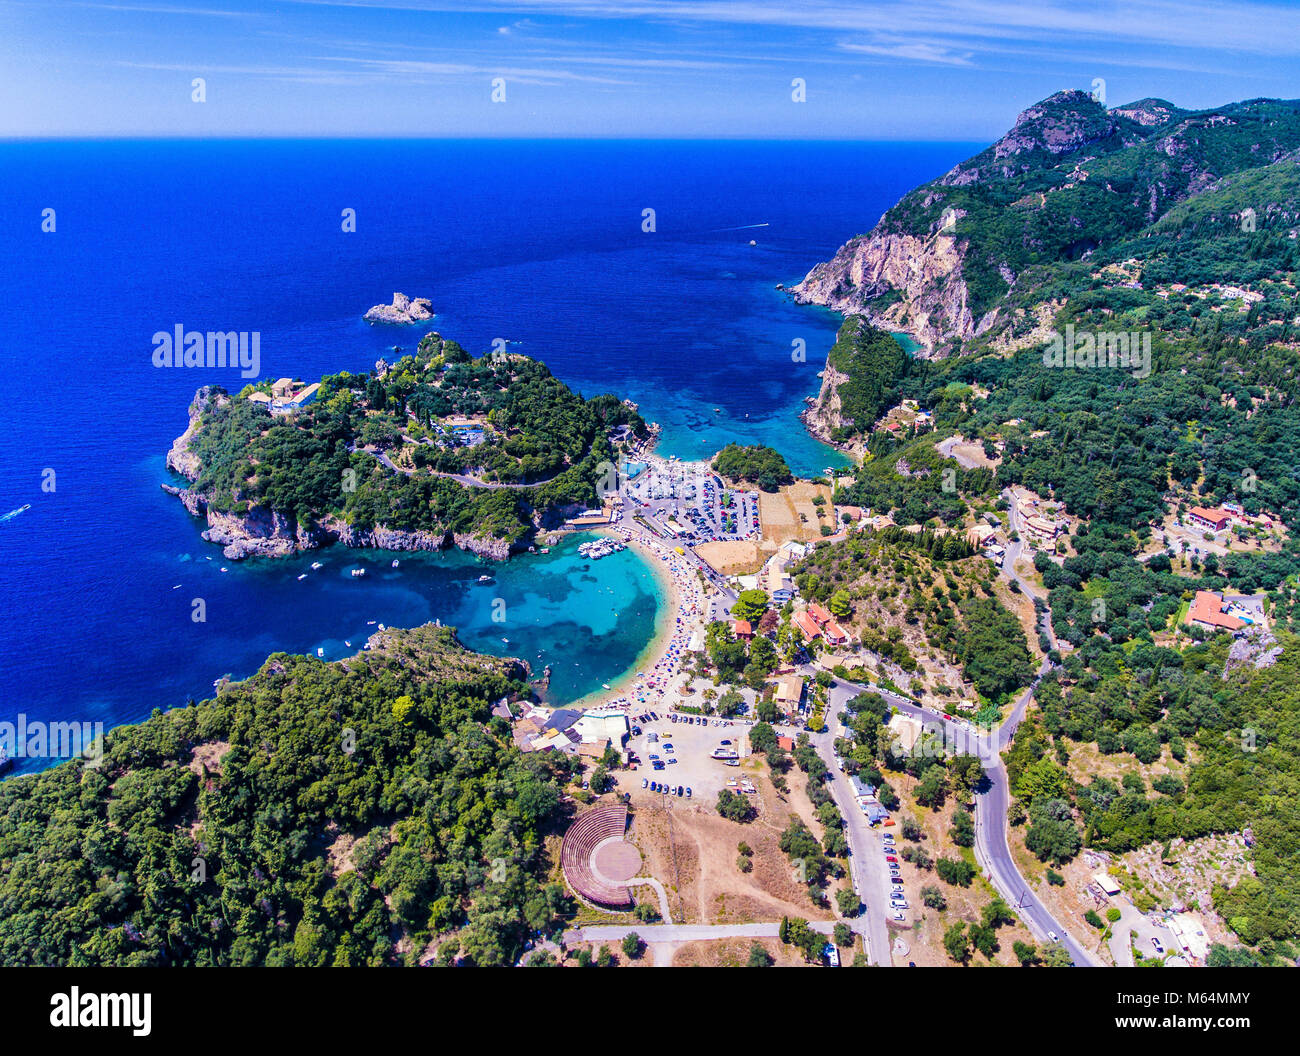 Paleokastrita bay e clifs con acque blu e cristalline, come visto da sopra. Importante attrazione turistica sull'isola di Corfu, Corfù, Grecia. Foto Stock